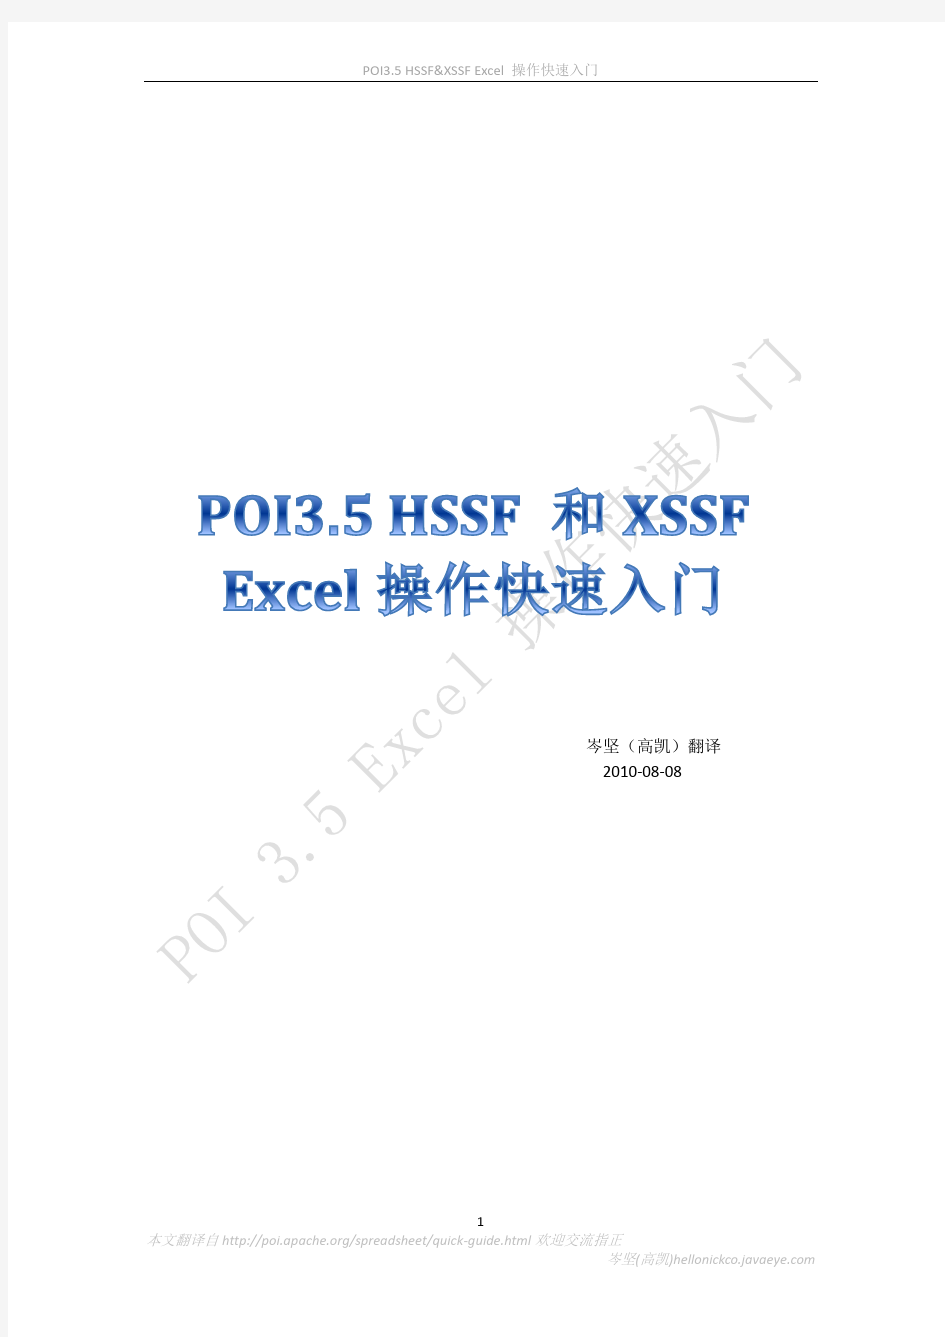 POI3.5_HSSF_和XSSF_Excel操作快速入门手册